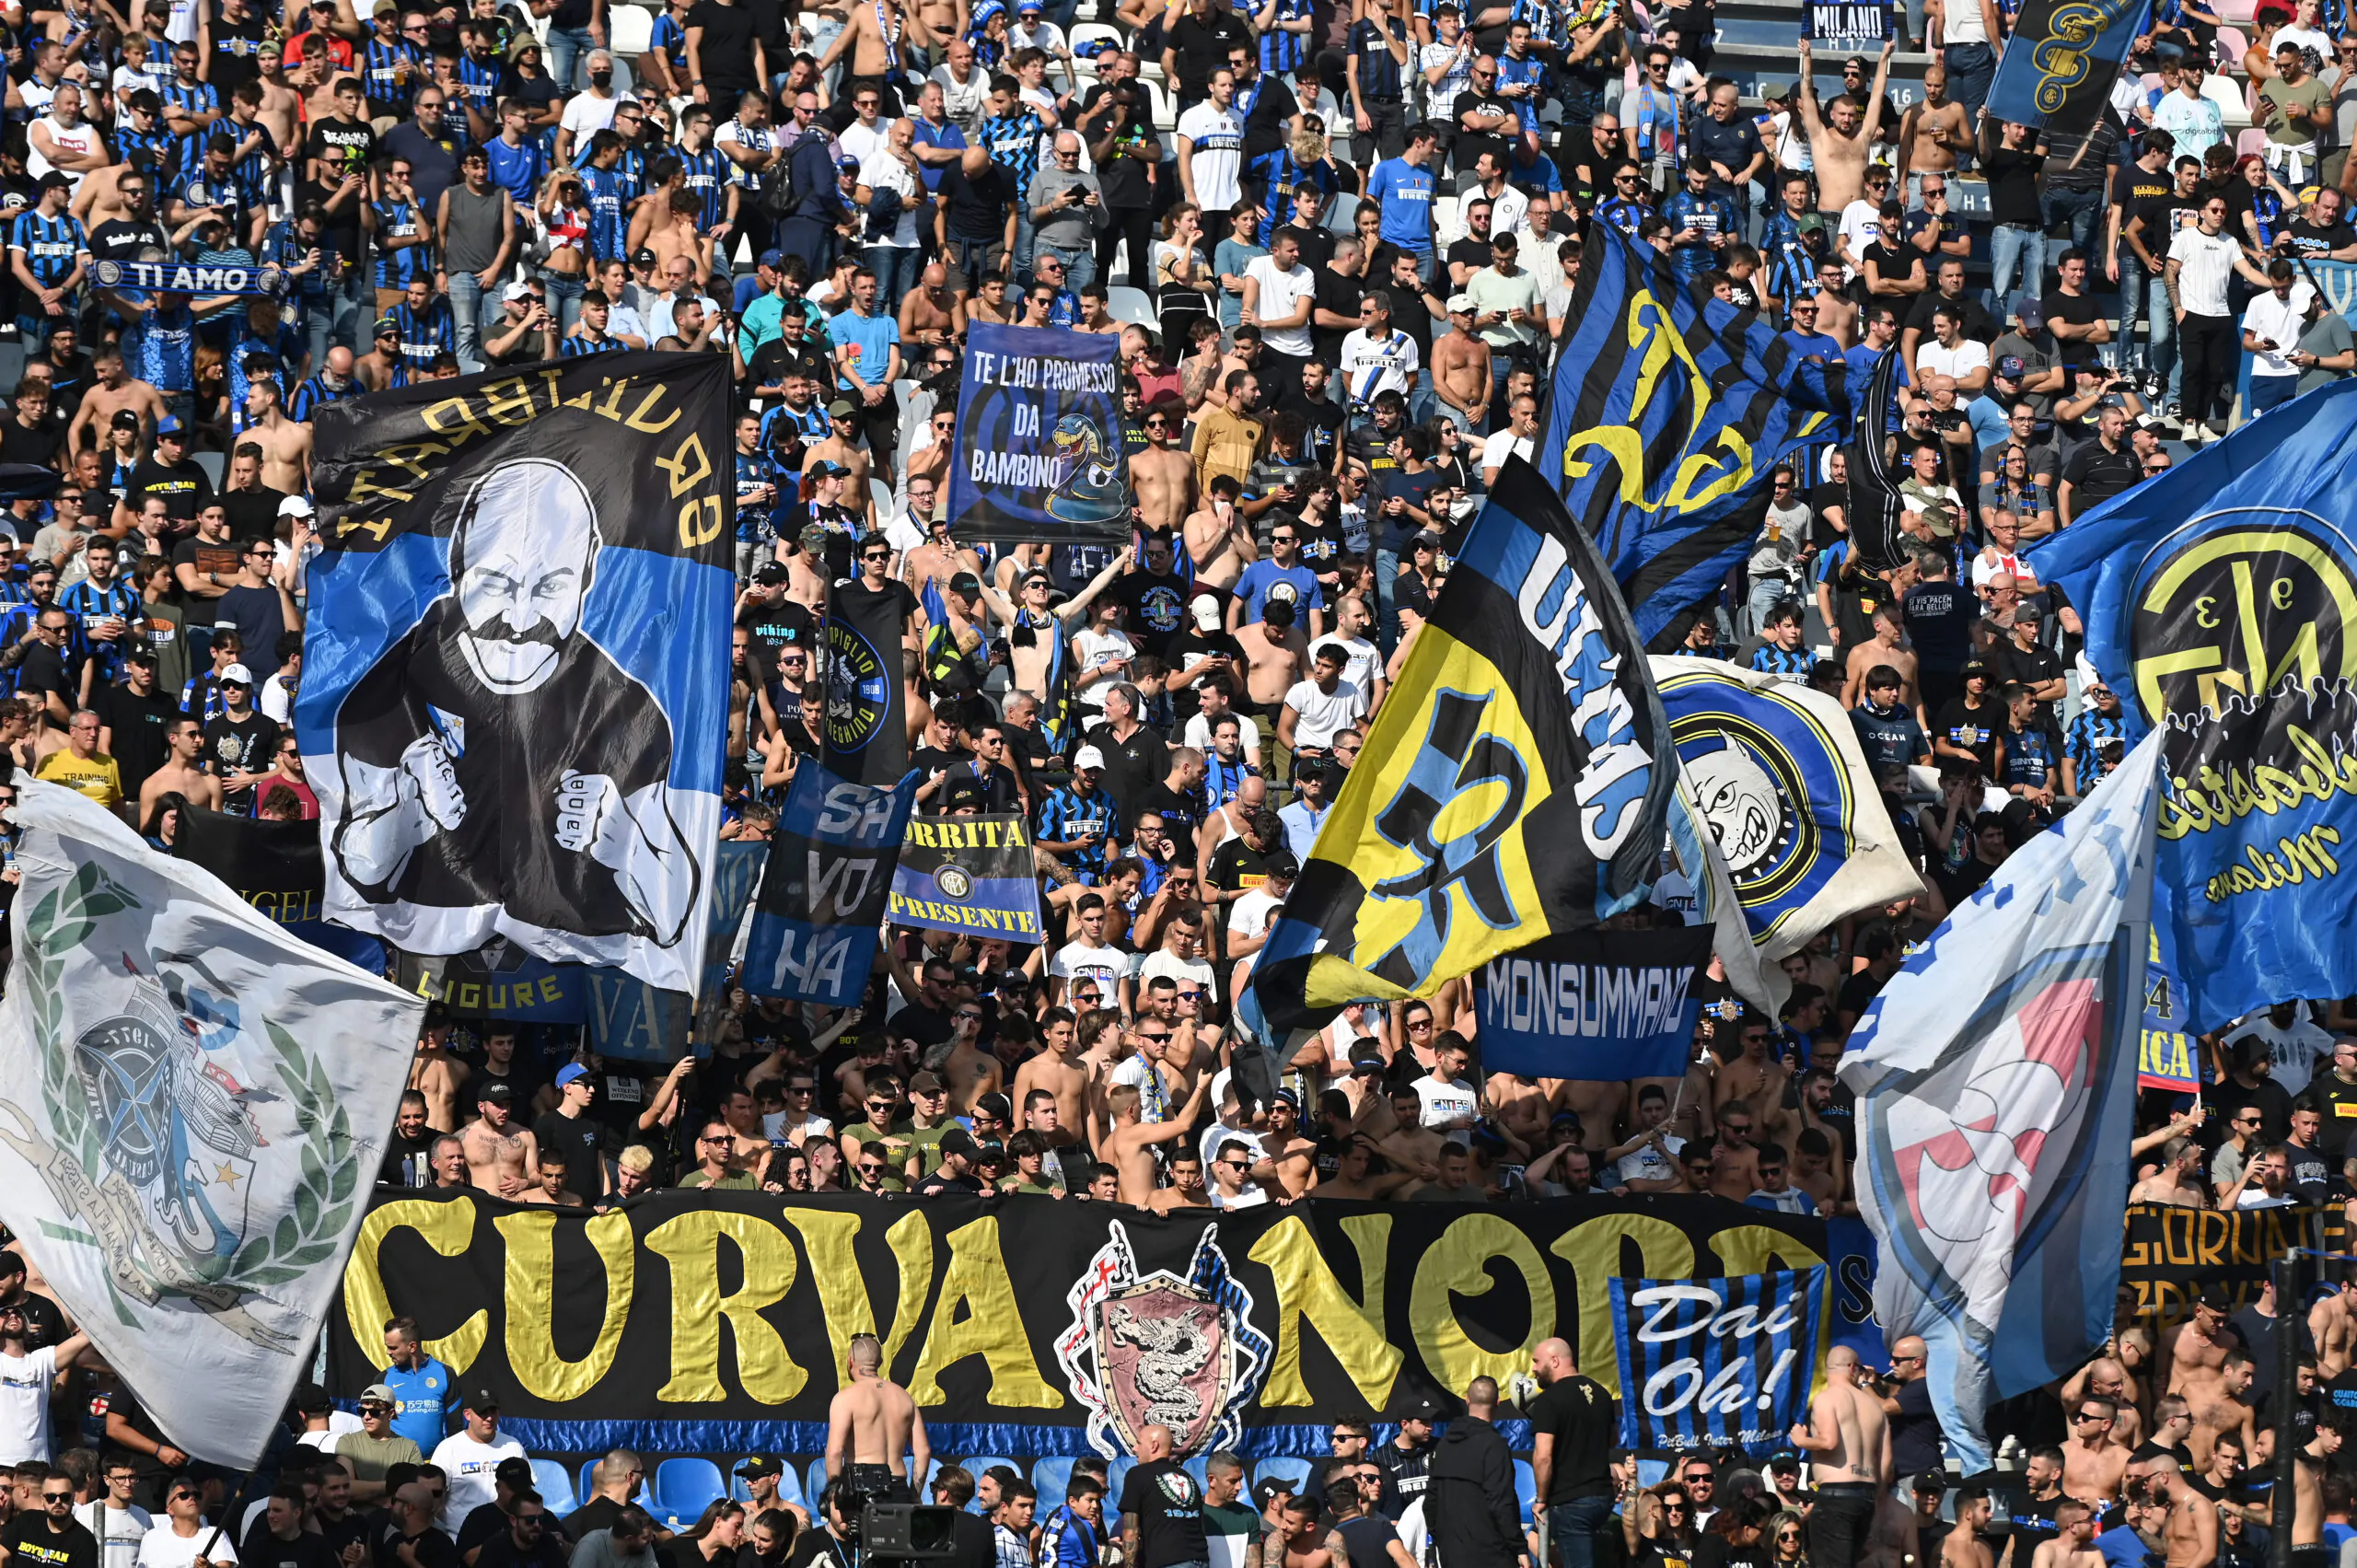 Situazione Curva Nord, la posizione dell’Inter: “Pronti a collaborare con le forze dell’ordine”